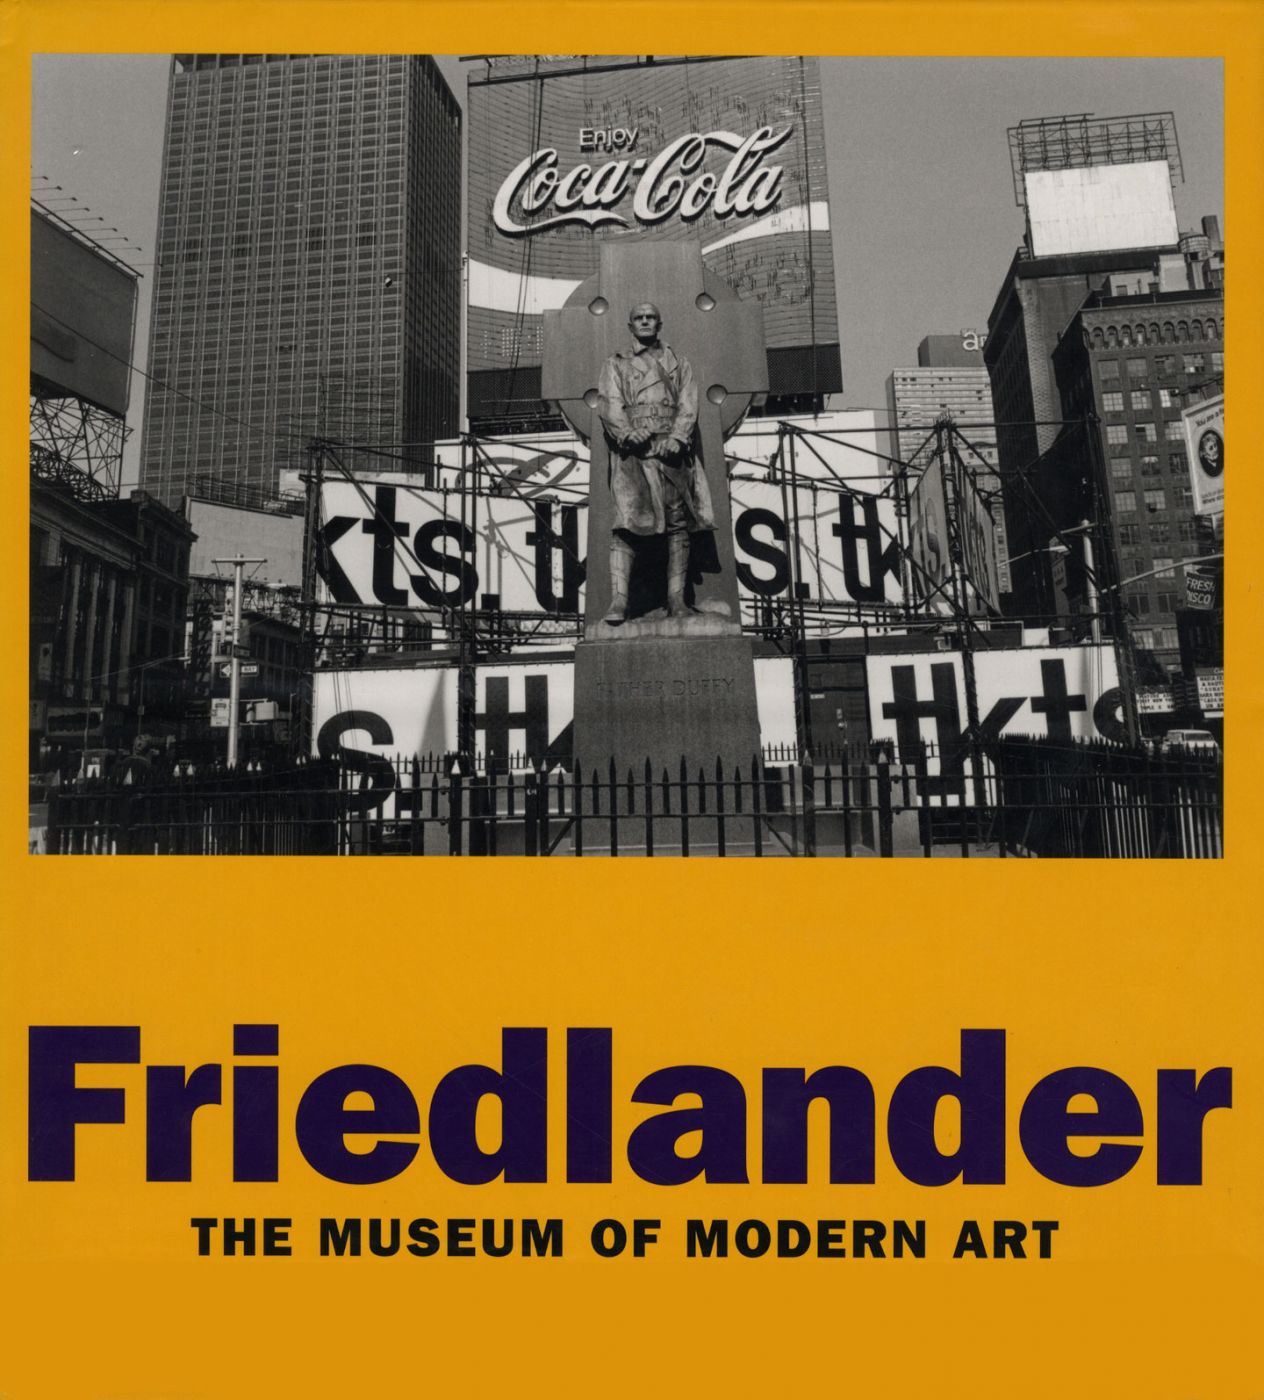 Lee Friedlander (MoMA, Hardcover) [SIGNED]